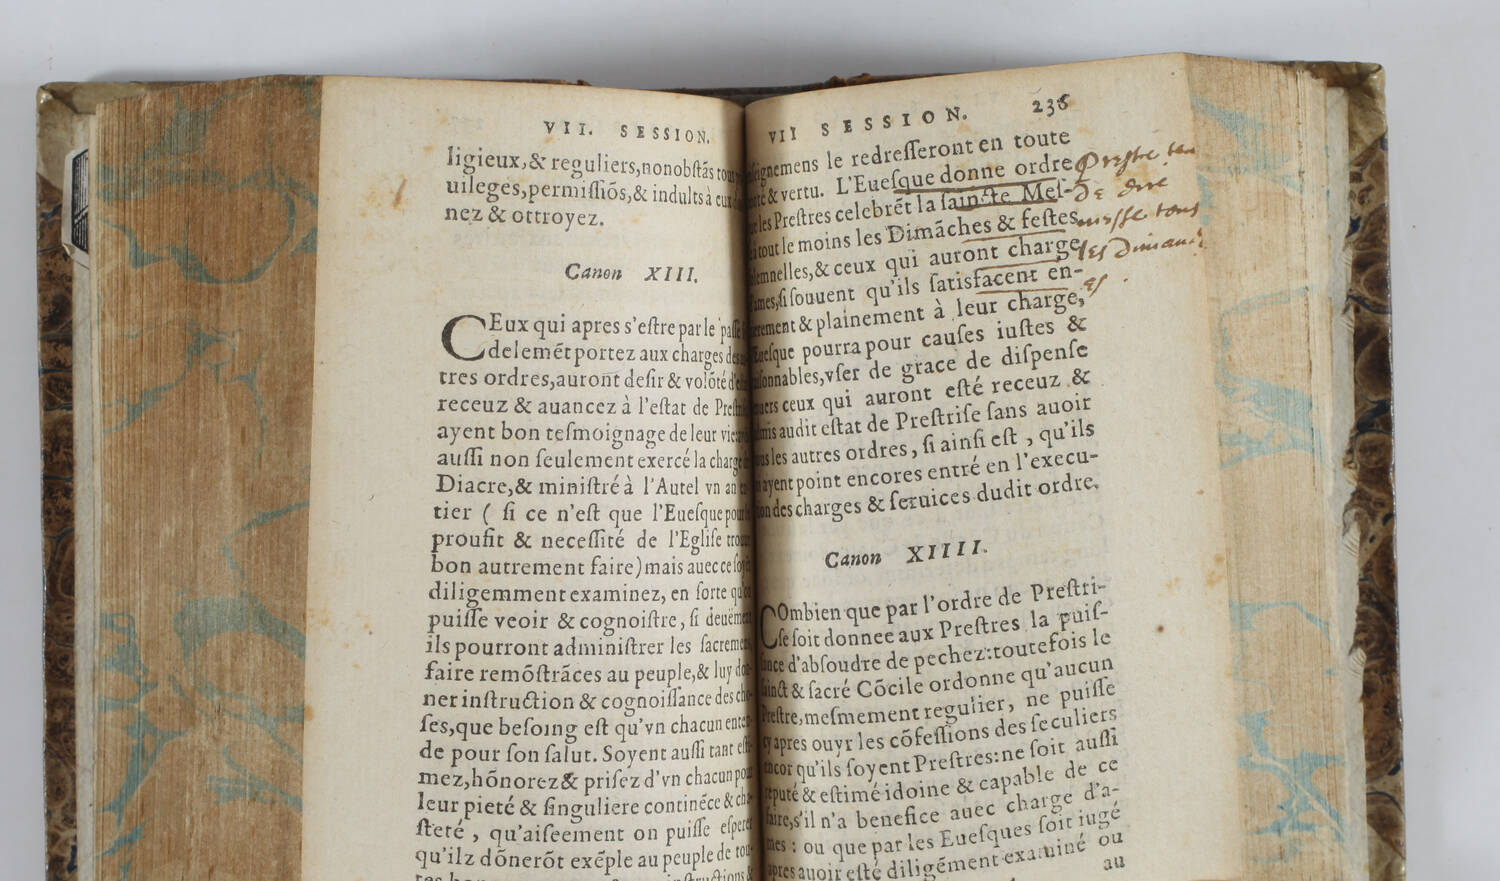 Gentian HERVET - Le sainct concile de Trente - Lyon, Benoist Rigaud, 1595 - Photo 3, livre ancien du XVIe siècle